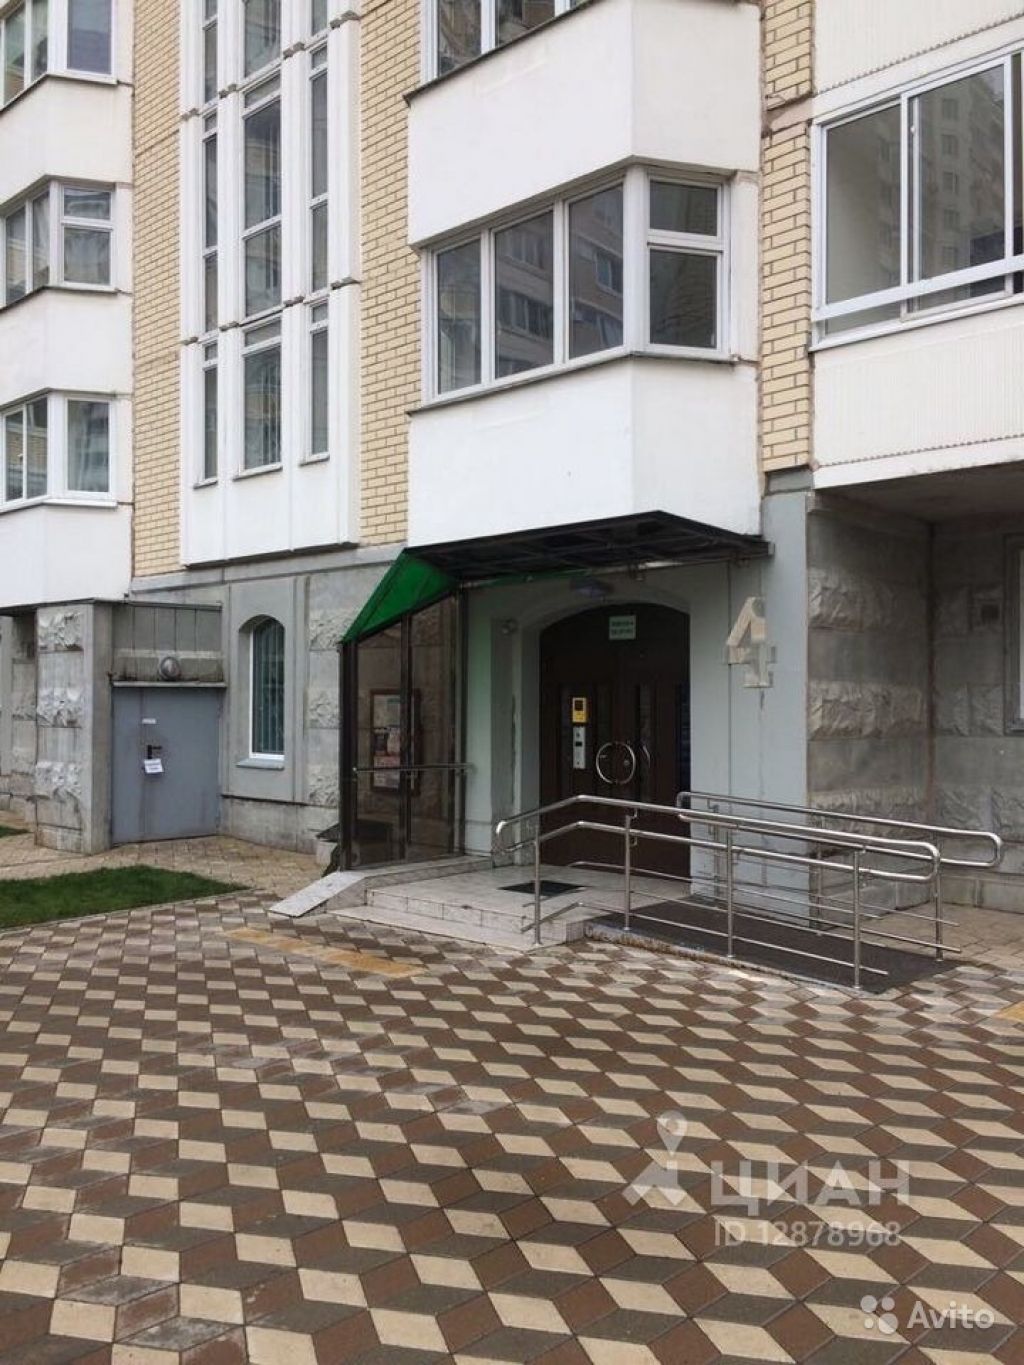 Продам квартиру 2-к квартира 51.1 м² на 3 этаже 17-этажного панельного дома в Москве. Фото 1